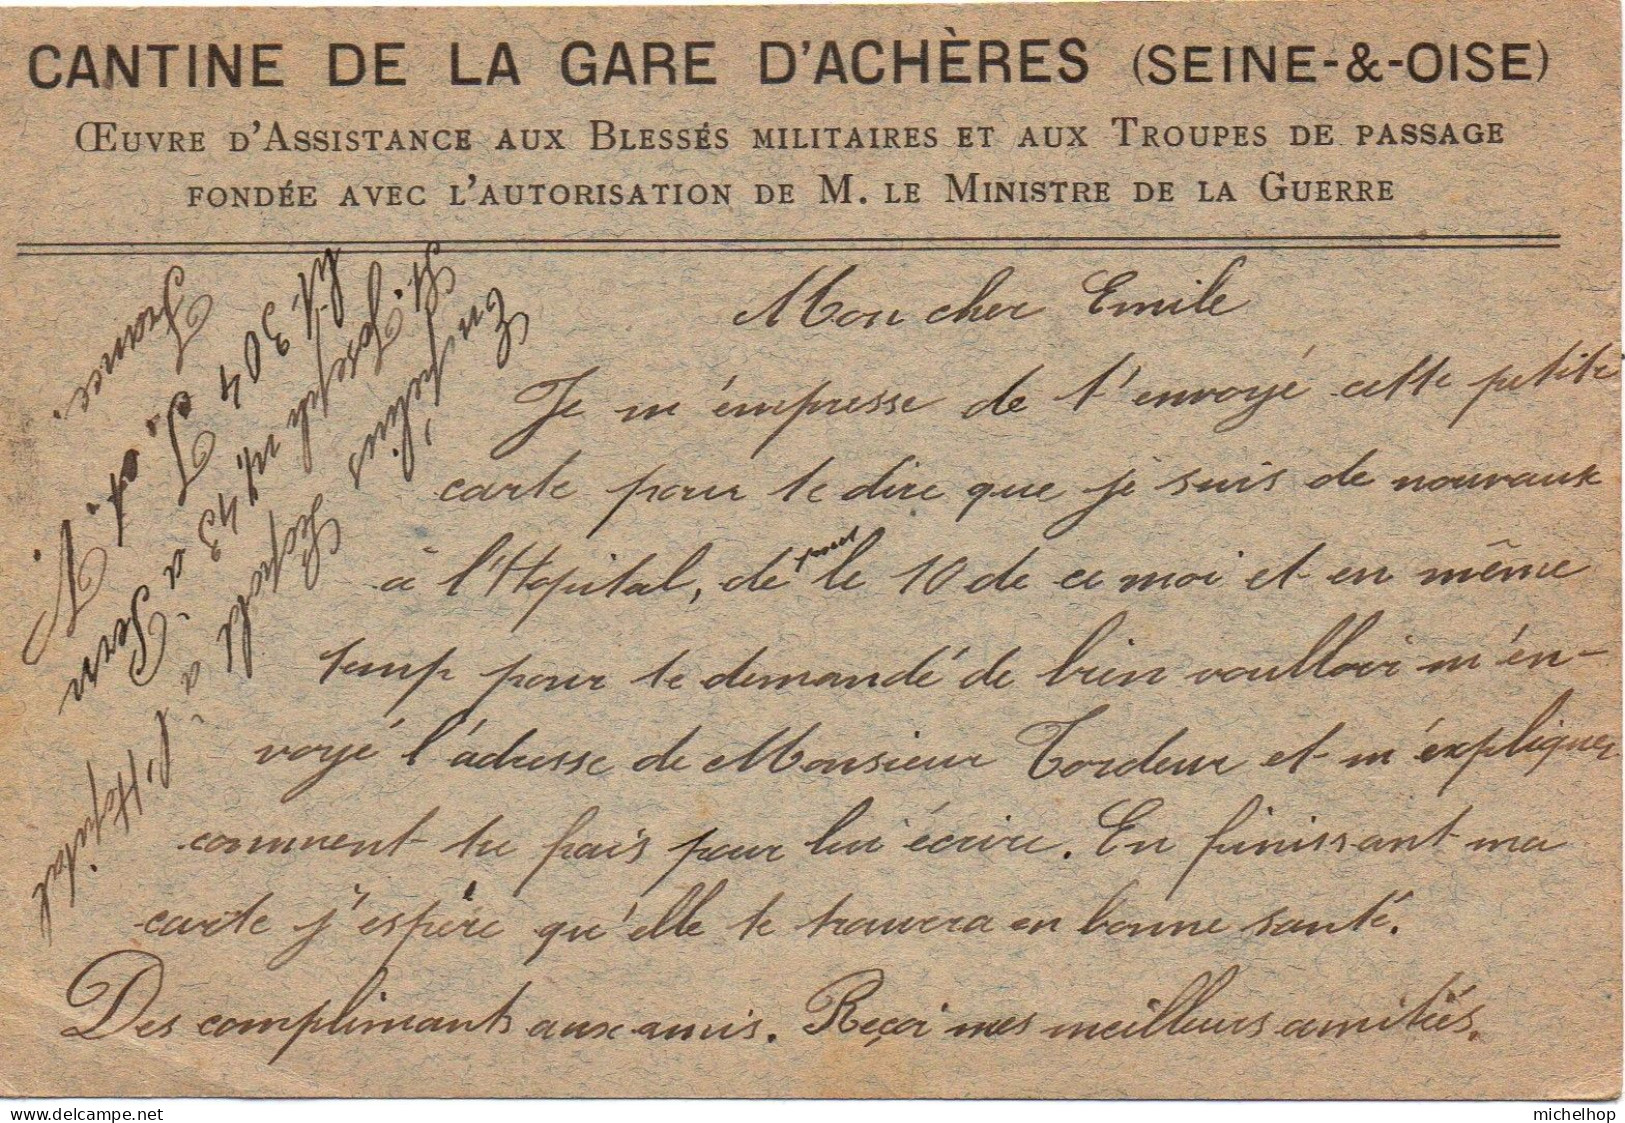 Carte Postale En Franchise Expédiée Par Un Militaire Belge Hospitalisé à St Pern - Repiquage Cantine Gare D'Achères - Army: Belgium